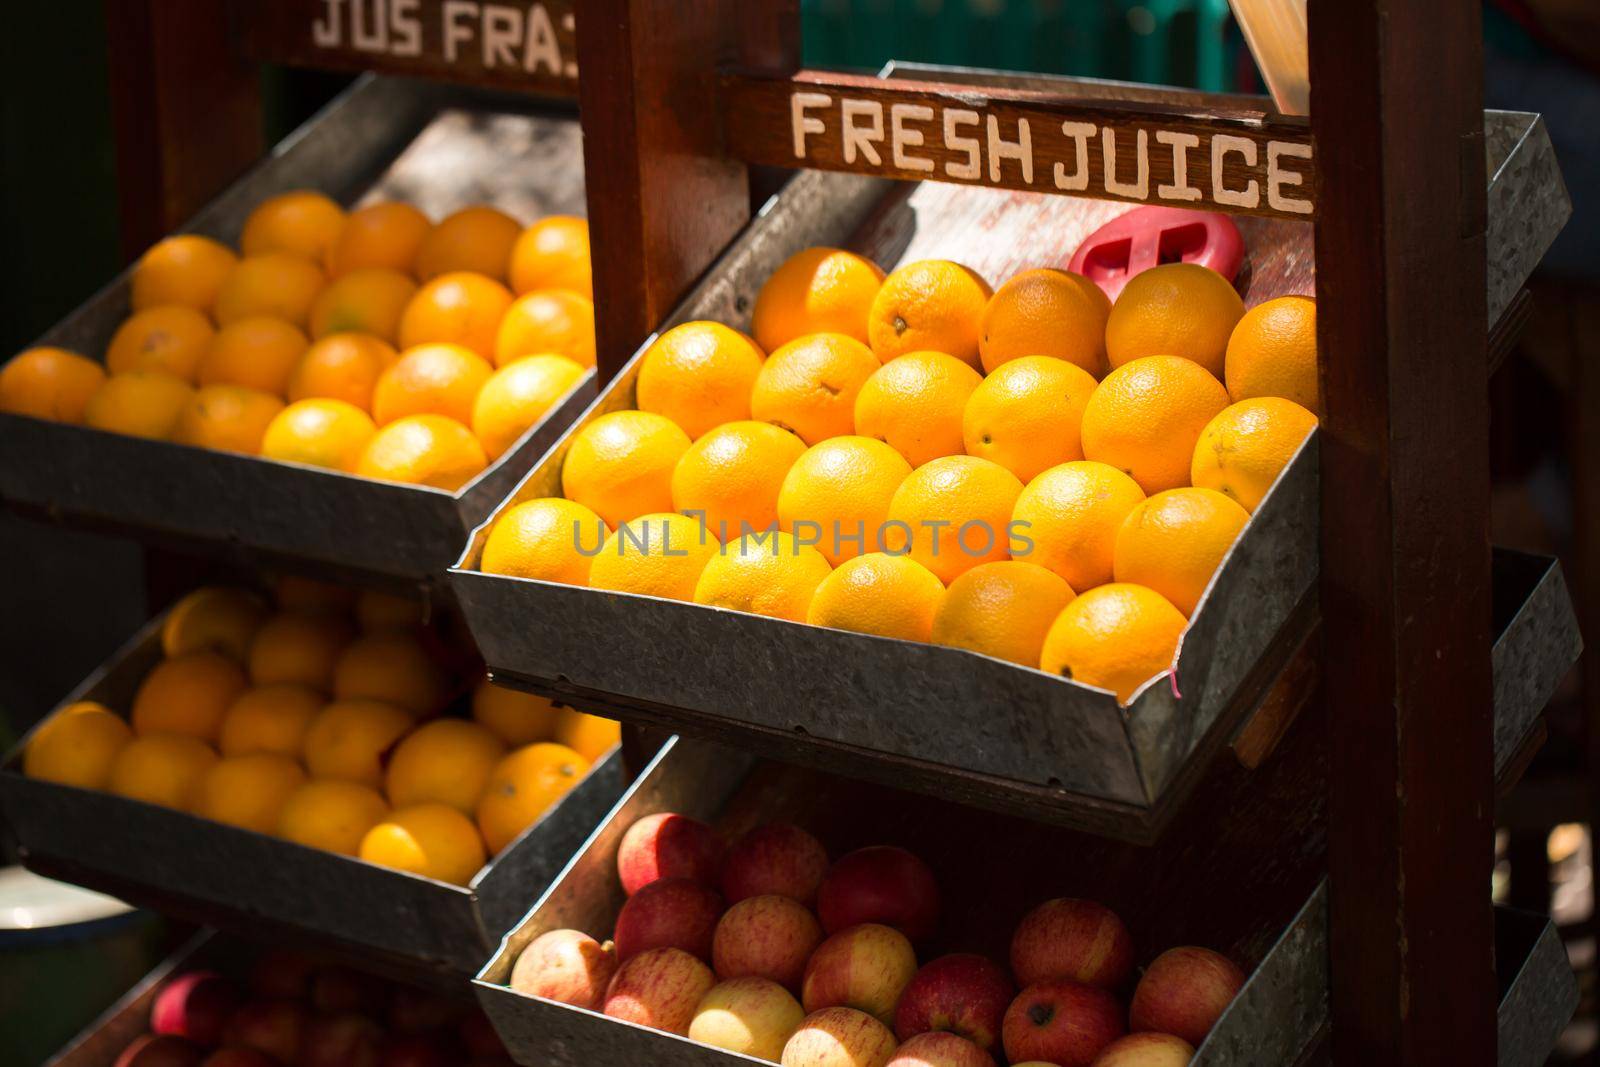 Juicy oranges in the market on display